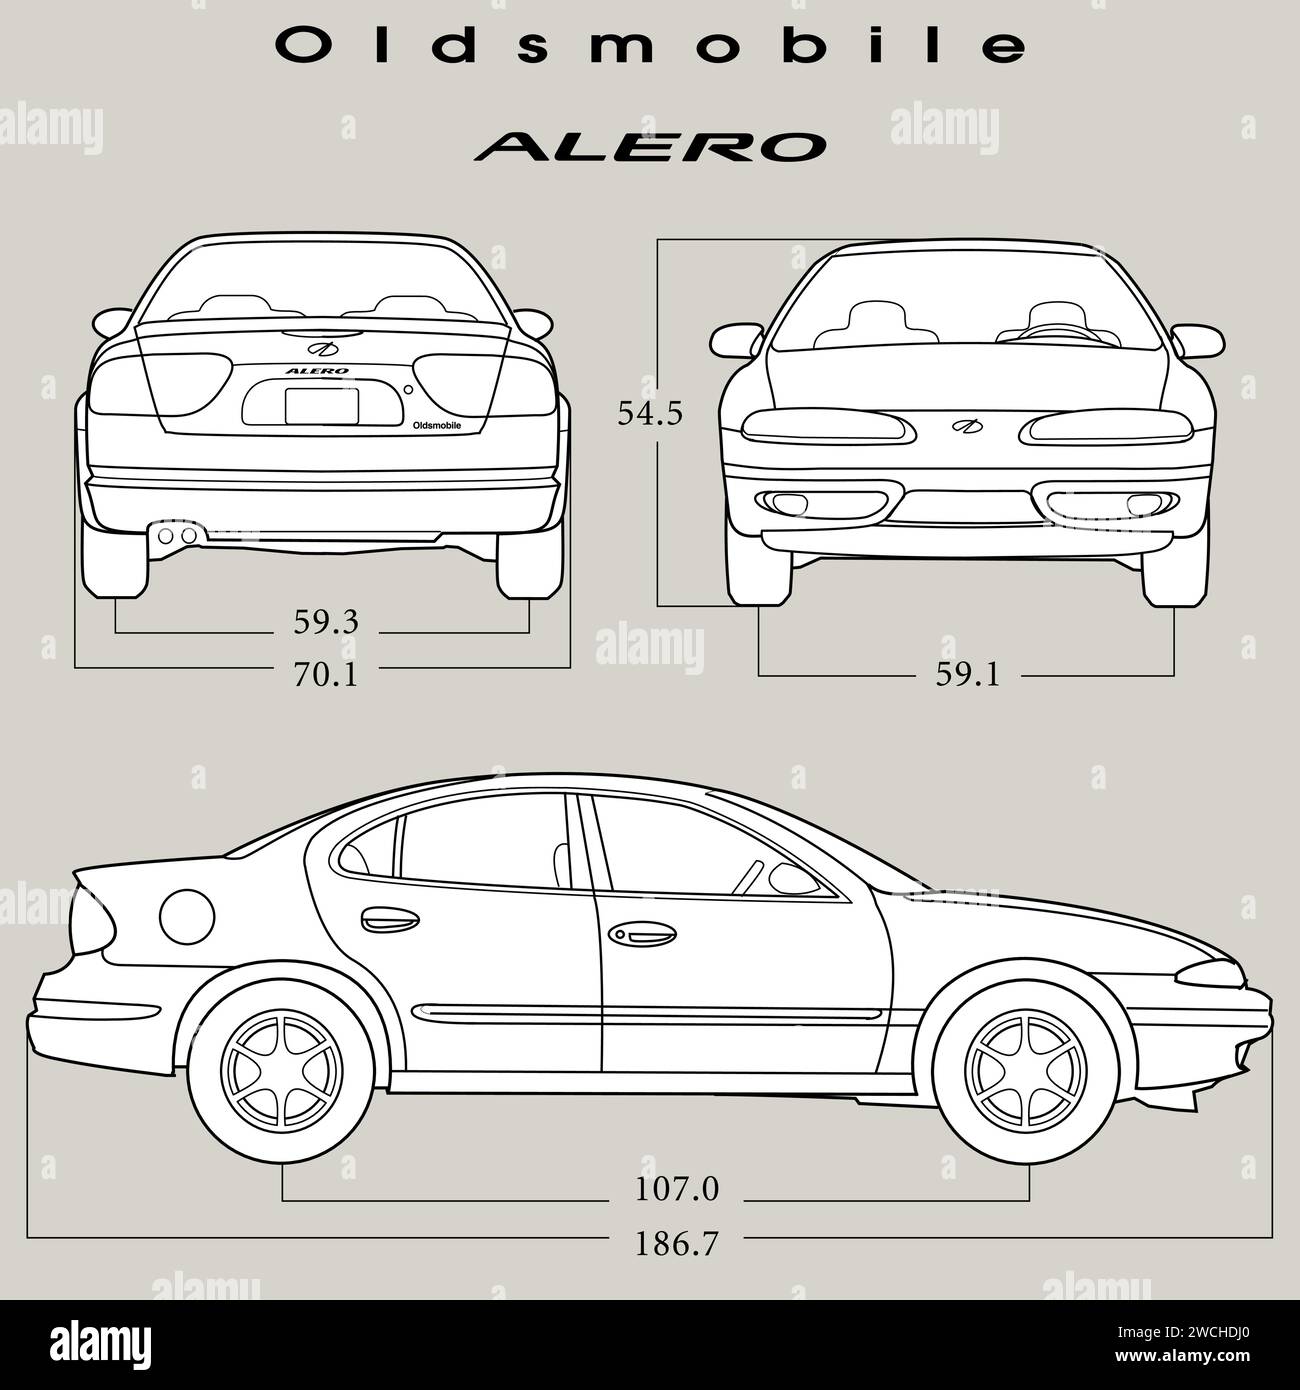 Modèle de voiture Alero 2001 d'Oldsmobile Illustration de Vecteur